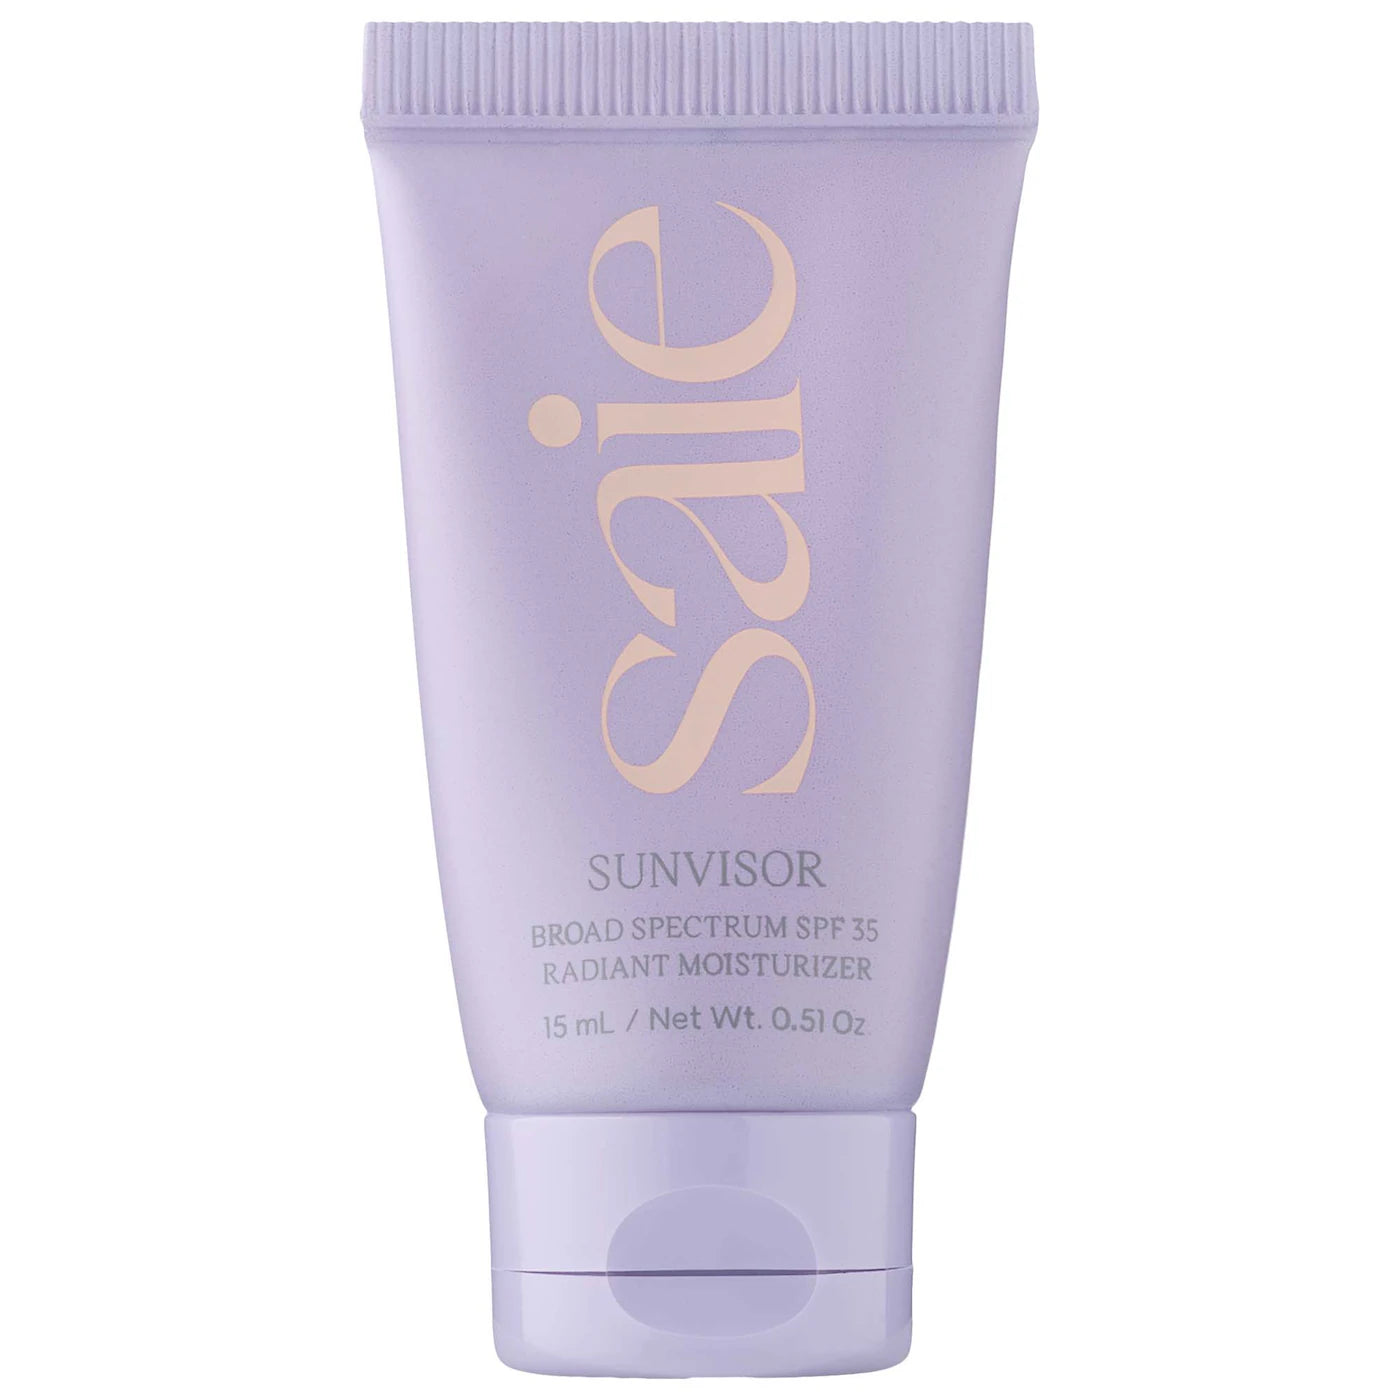 Saie - Sunvisor Radiant Moisturizing Face Sunscreen SPF 35 | 15 mL